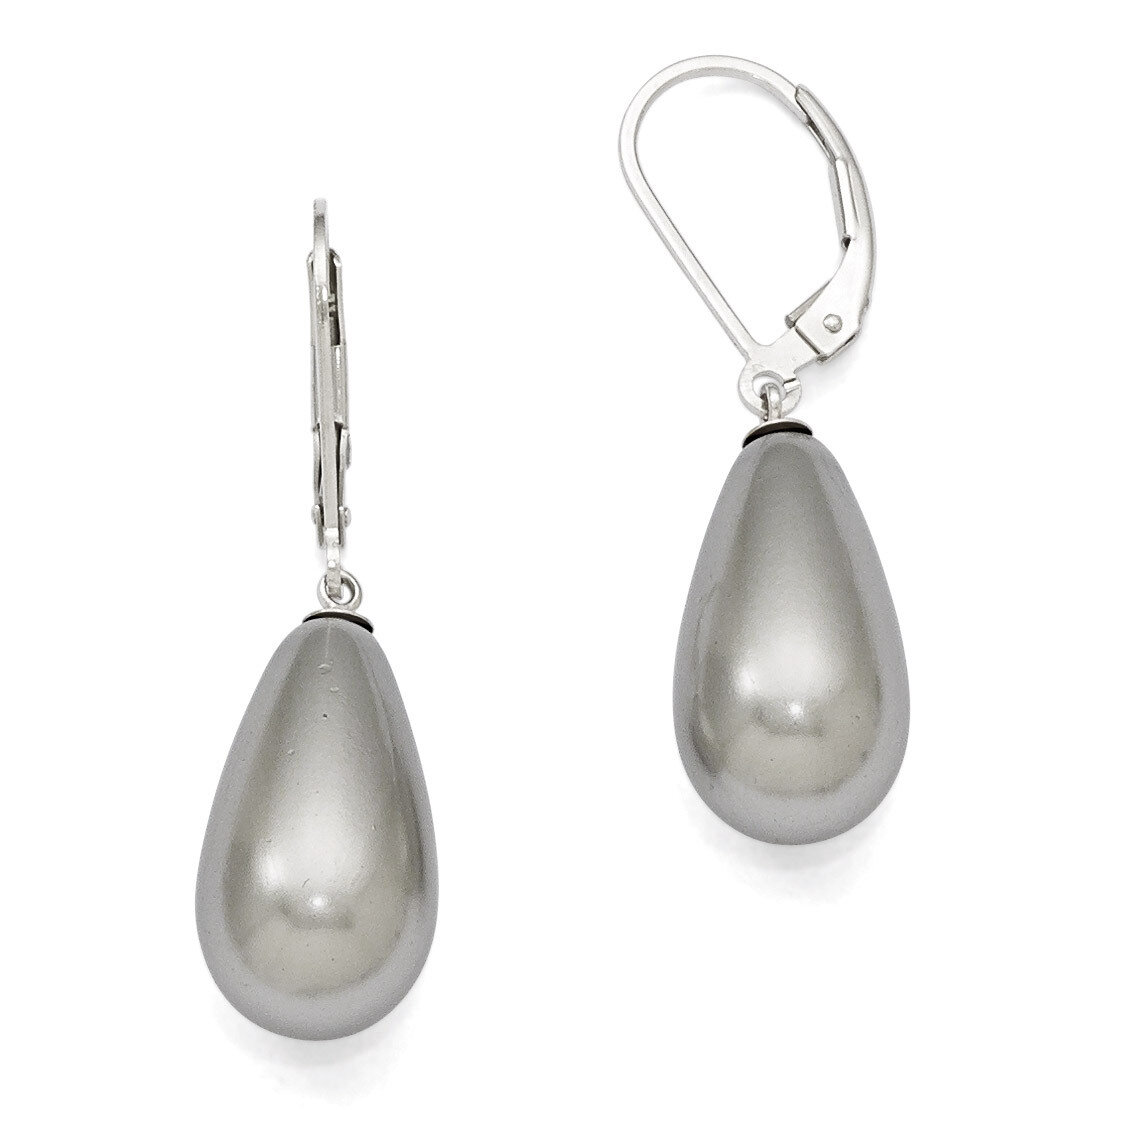 10X18Mm Teardrop Grey Shell Bead Earrings Sterling Silver QMJET10G